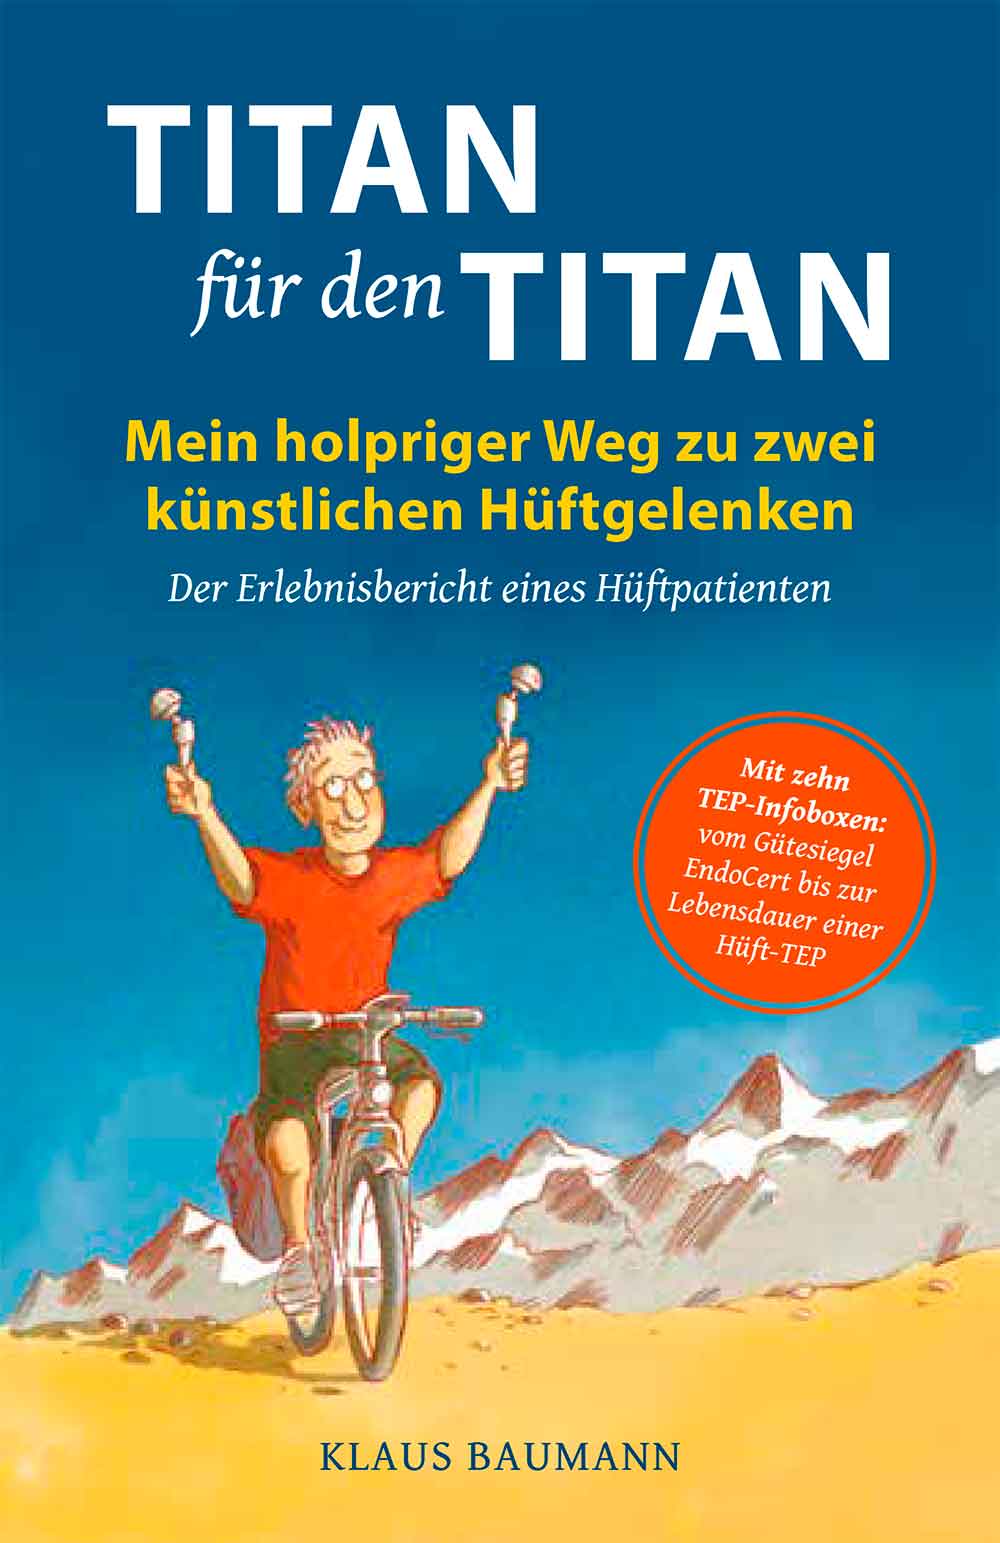 Anzeige: Lesetipps für Gütersloh: Hüftpatient veröffentlicht Erlebnisbuch »Titan für den Titan«